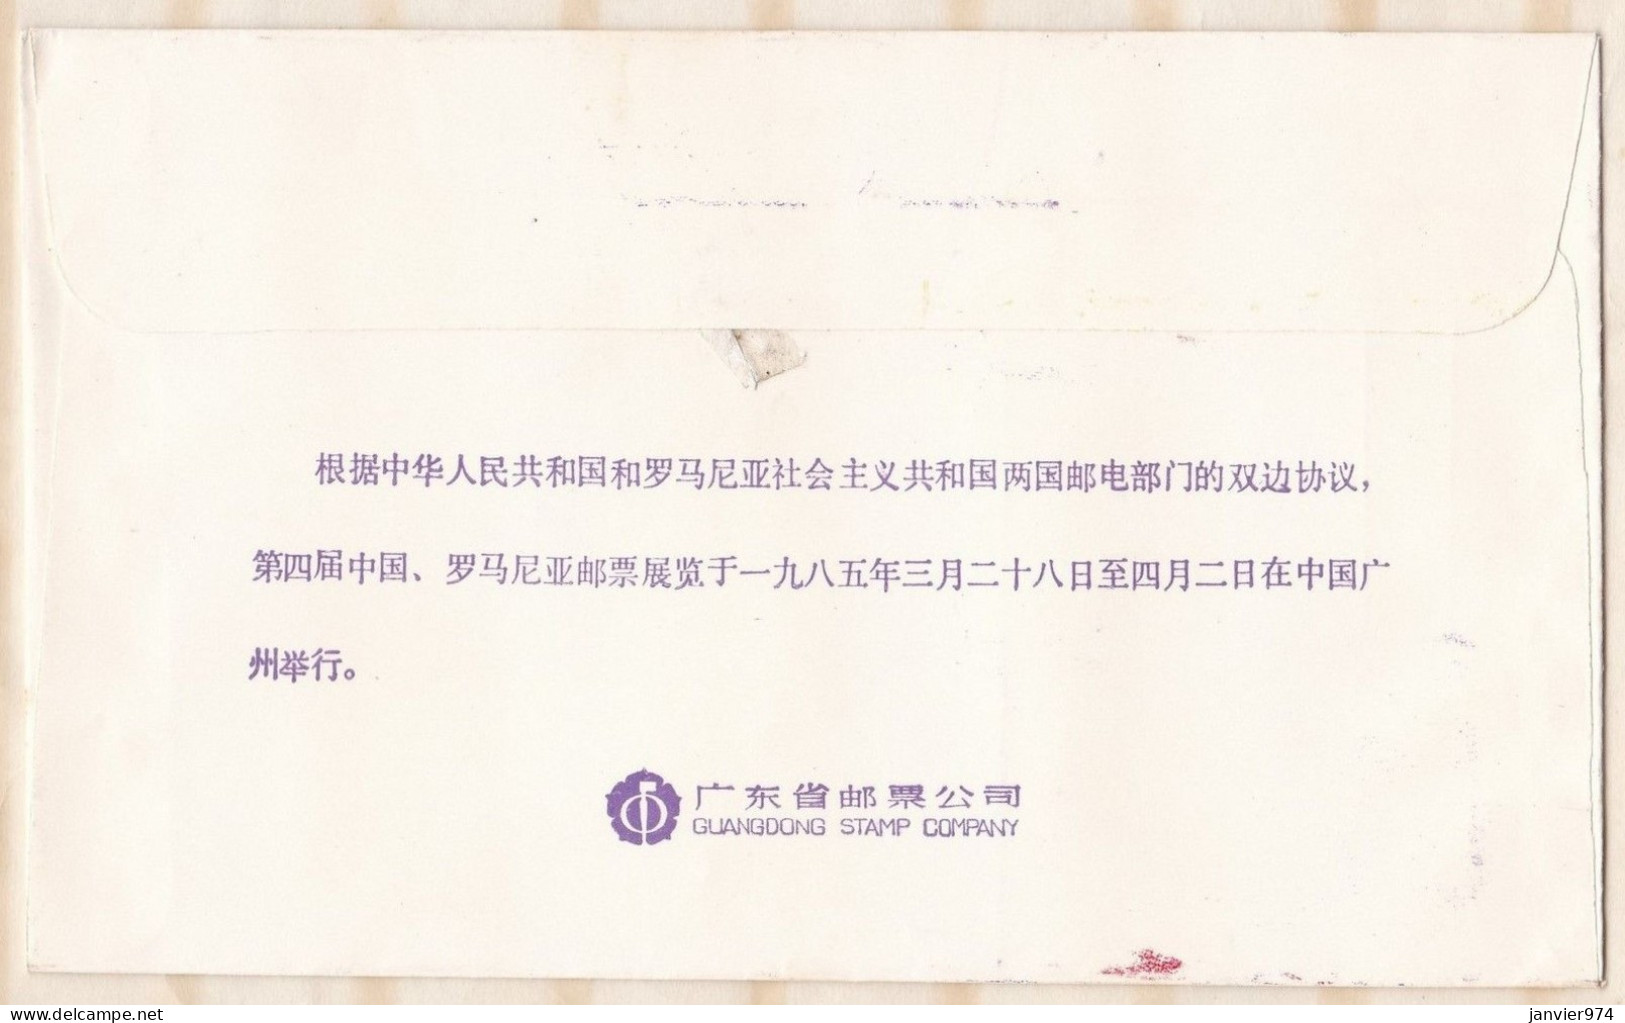 Chine 1985 , 3 lettres 1er jour et carte postale l'exposition philatélique Chino- Romane, Scan Recto verso